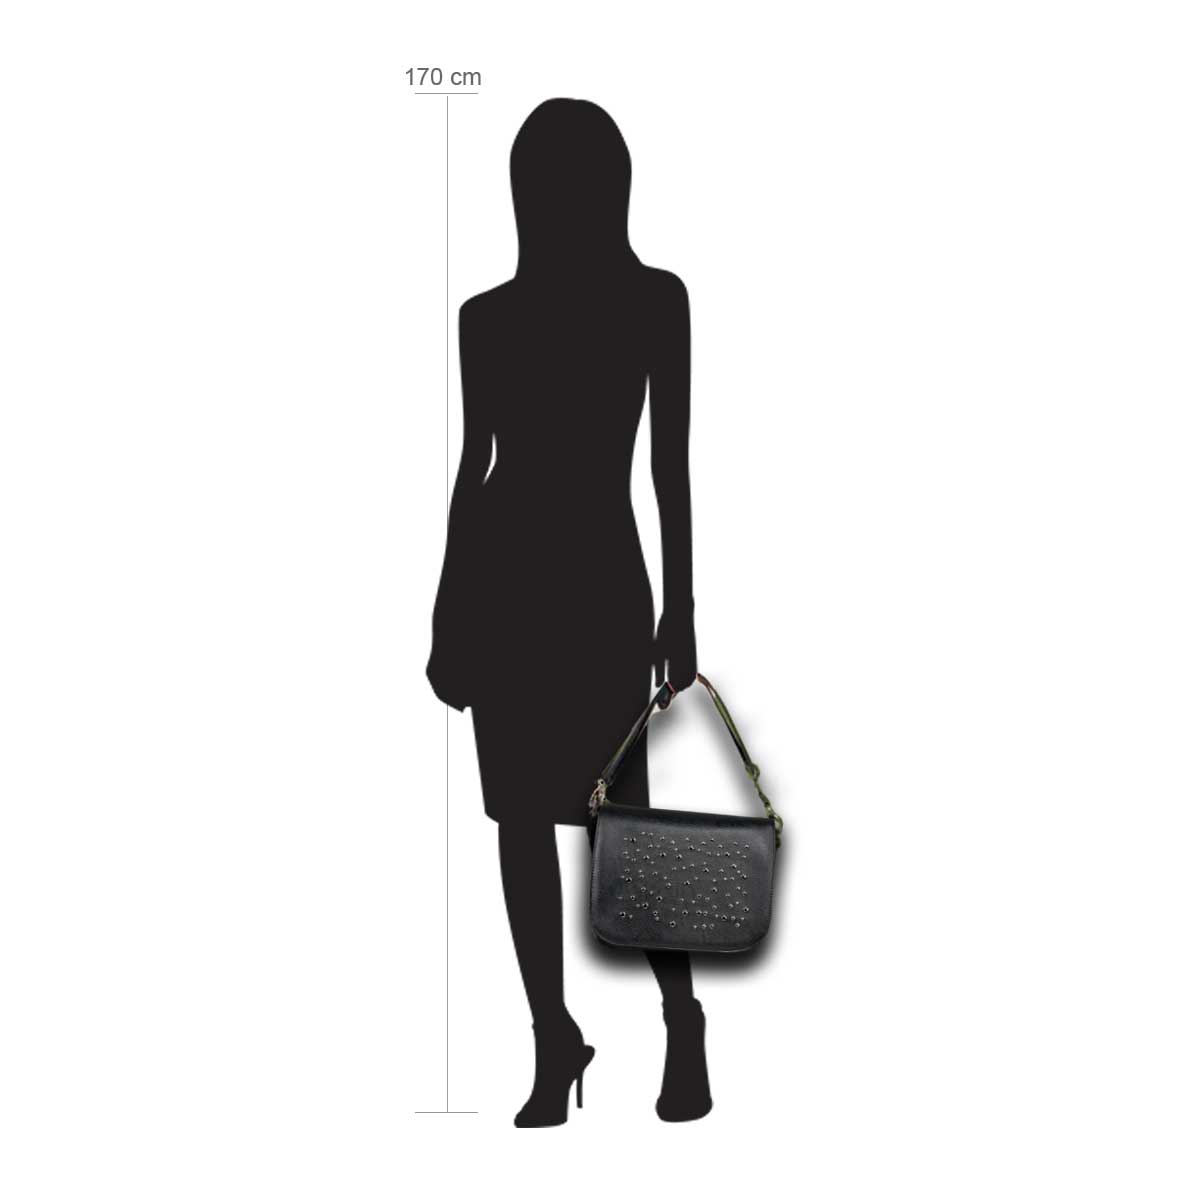 Modellpuppe 170 cm groß zeigt die Handtaschengröße an der Person Modell:Garachico